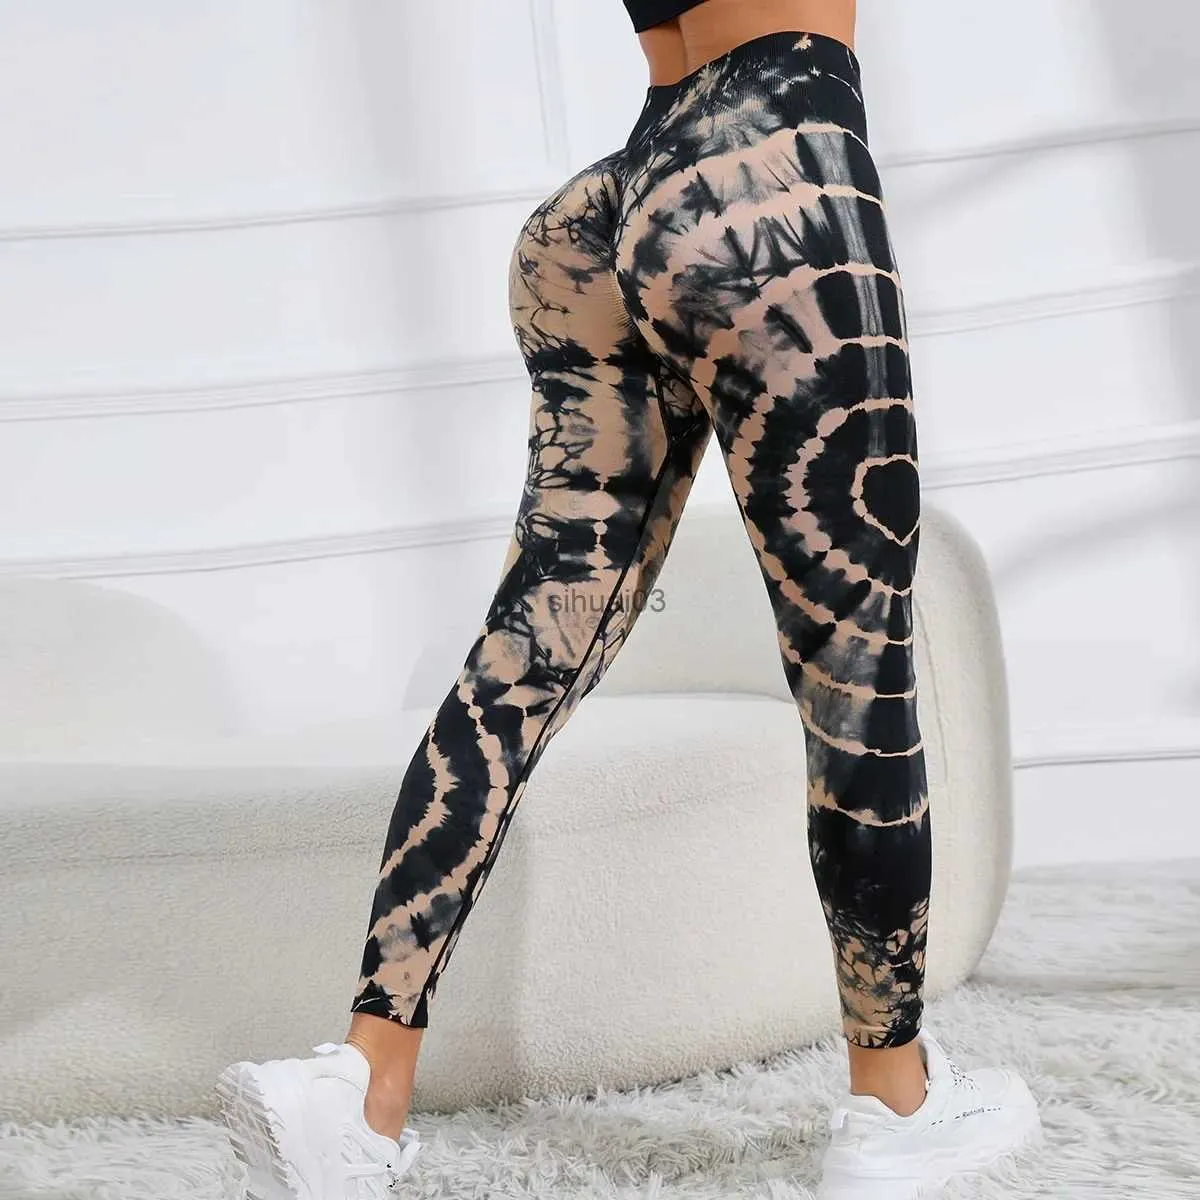 Spodnie damskie Capris Kobiet drukuj szwane spodnie Lampart Leopard High Talle Leggingi cienki fitness spodni push upnie sporne spodnie na siłownię rajstopy treningowe